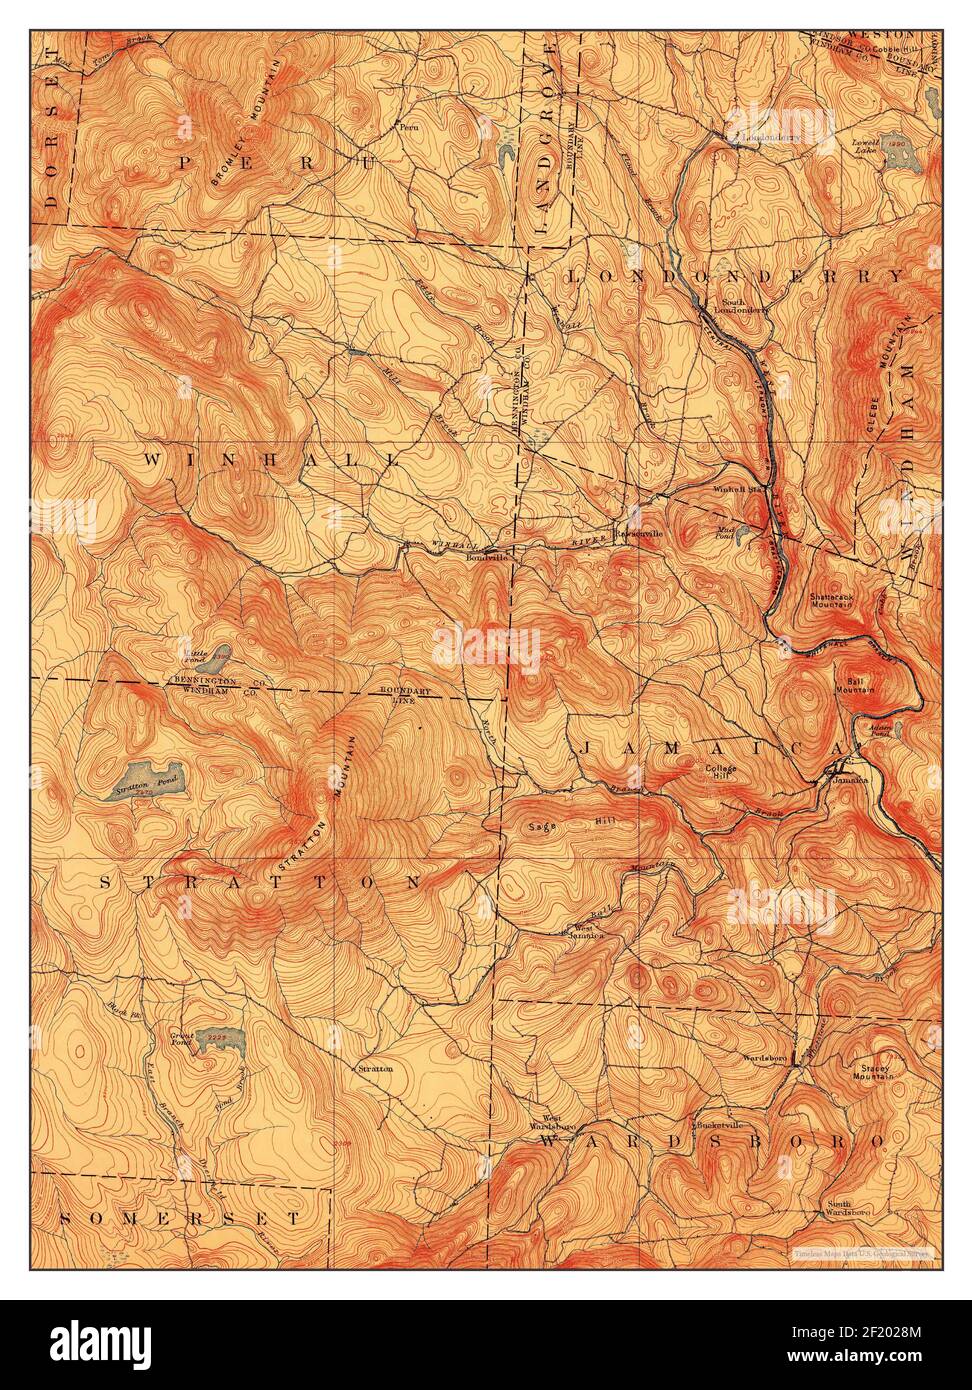 Londonderry, Vermont, Karte 1899, 1:62500, Vereinigte Staaten von Amerika von Timeless Maps, Daten U.S. Geological Survey Stockfoto